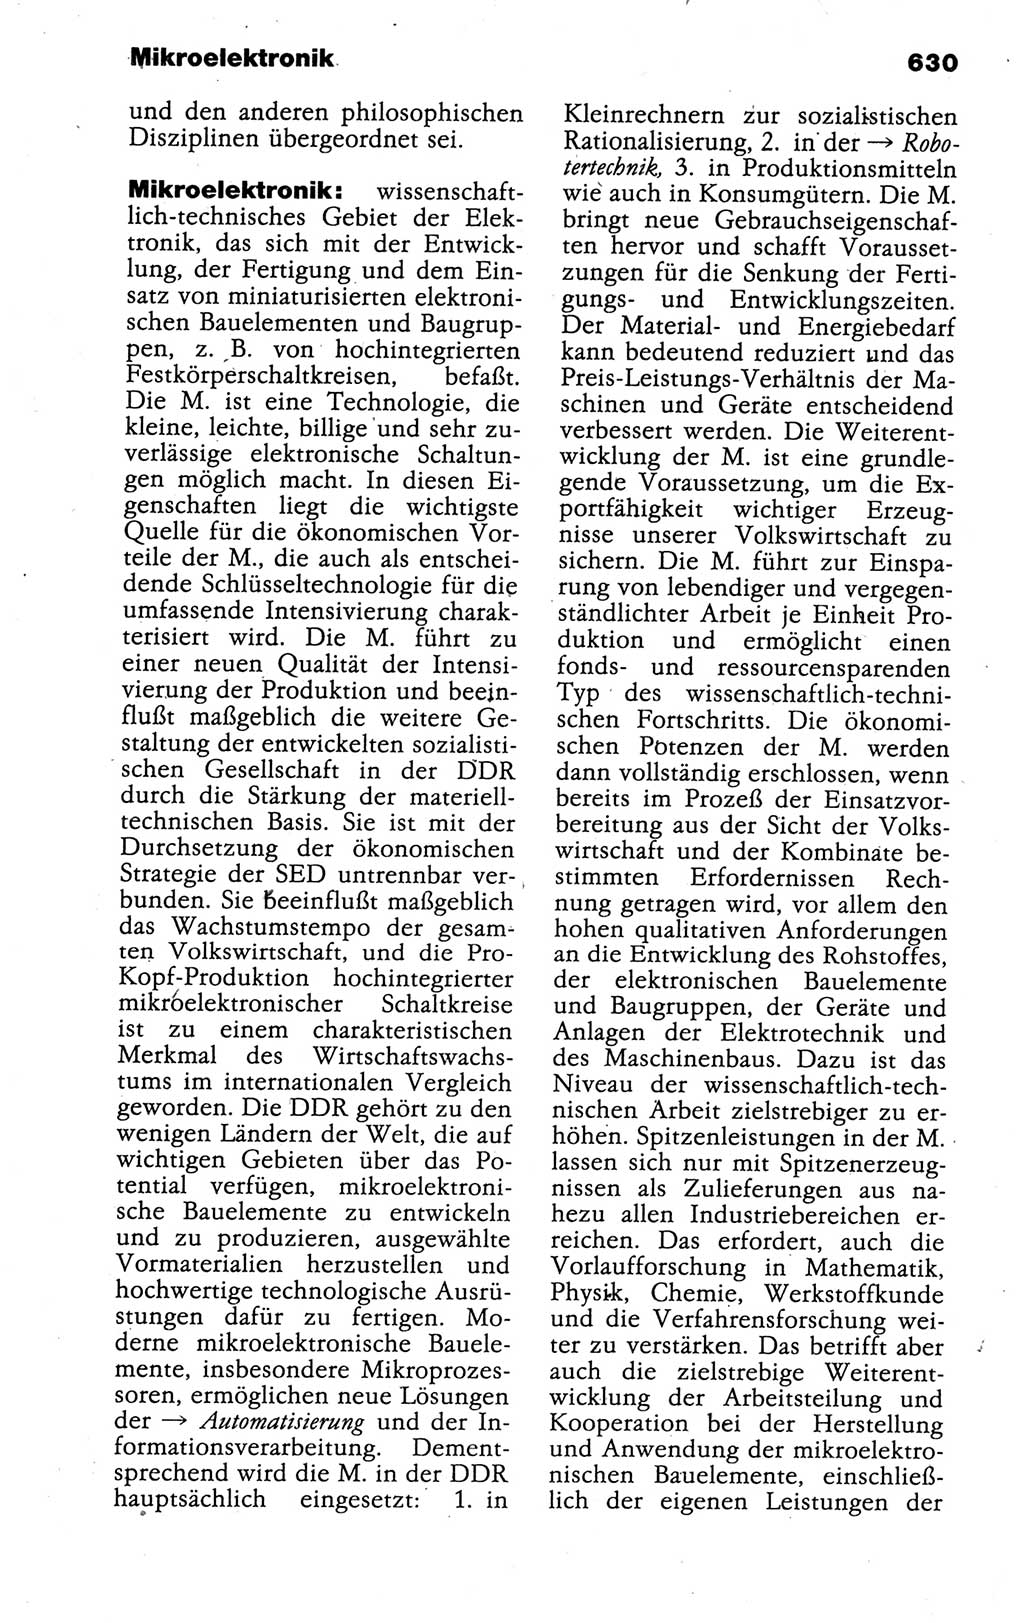 Kleines politisches Wörterbuch [Deutsche Demokratische Republik (DDR)] 1988, Seite 630 (Kl. pol. Wb. DDR 1988, S. 630)